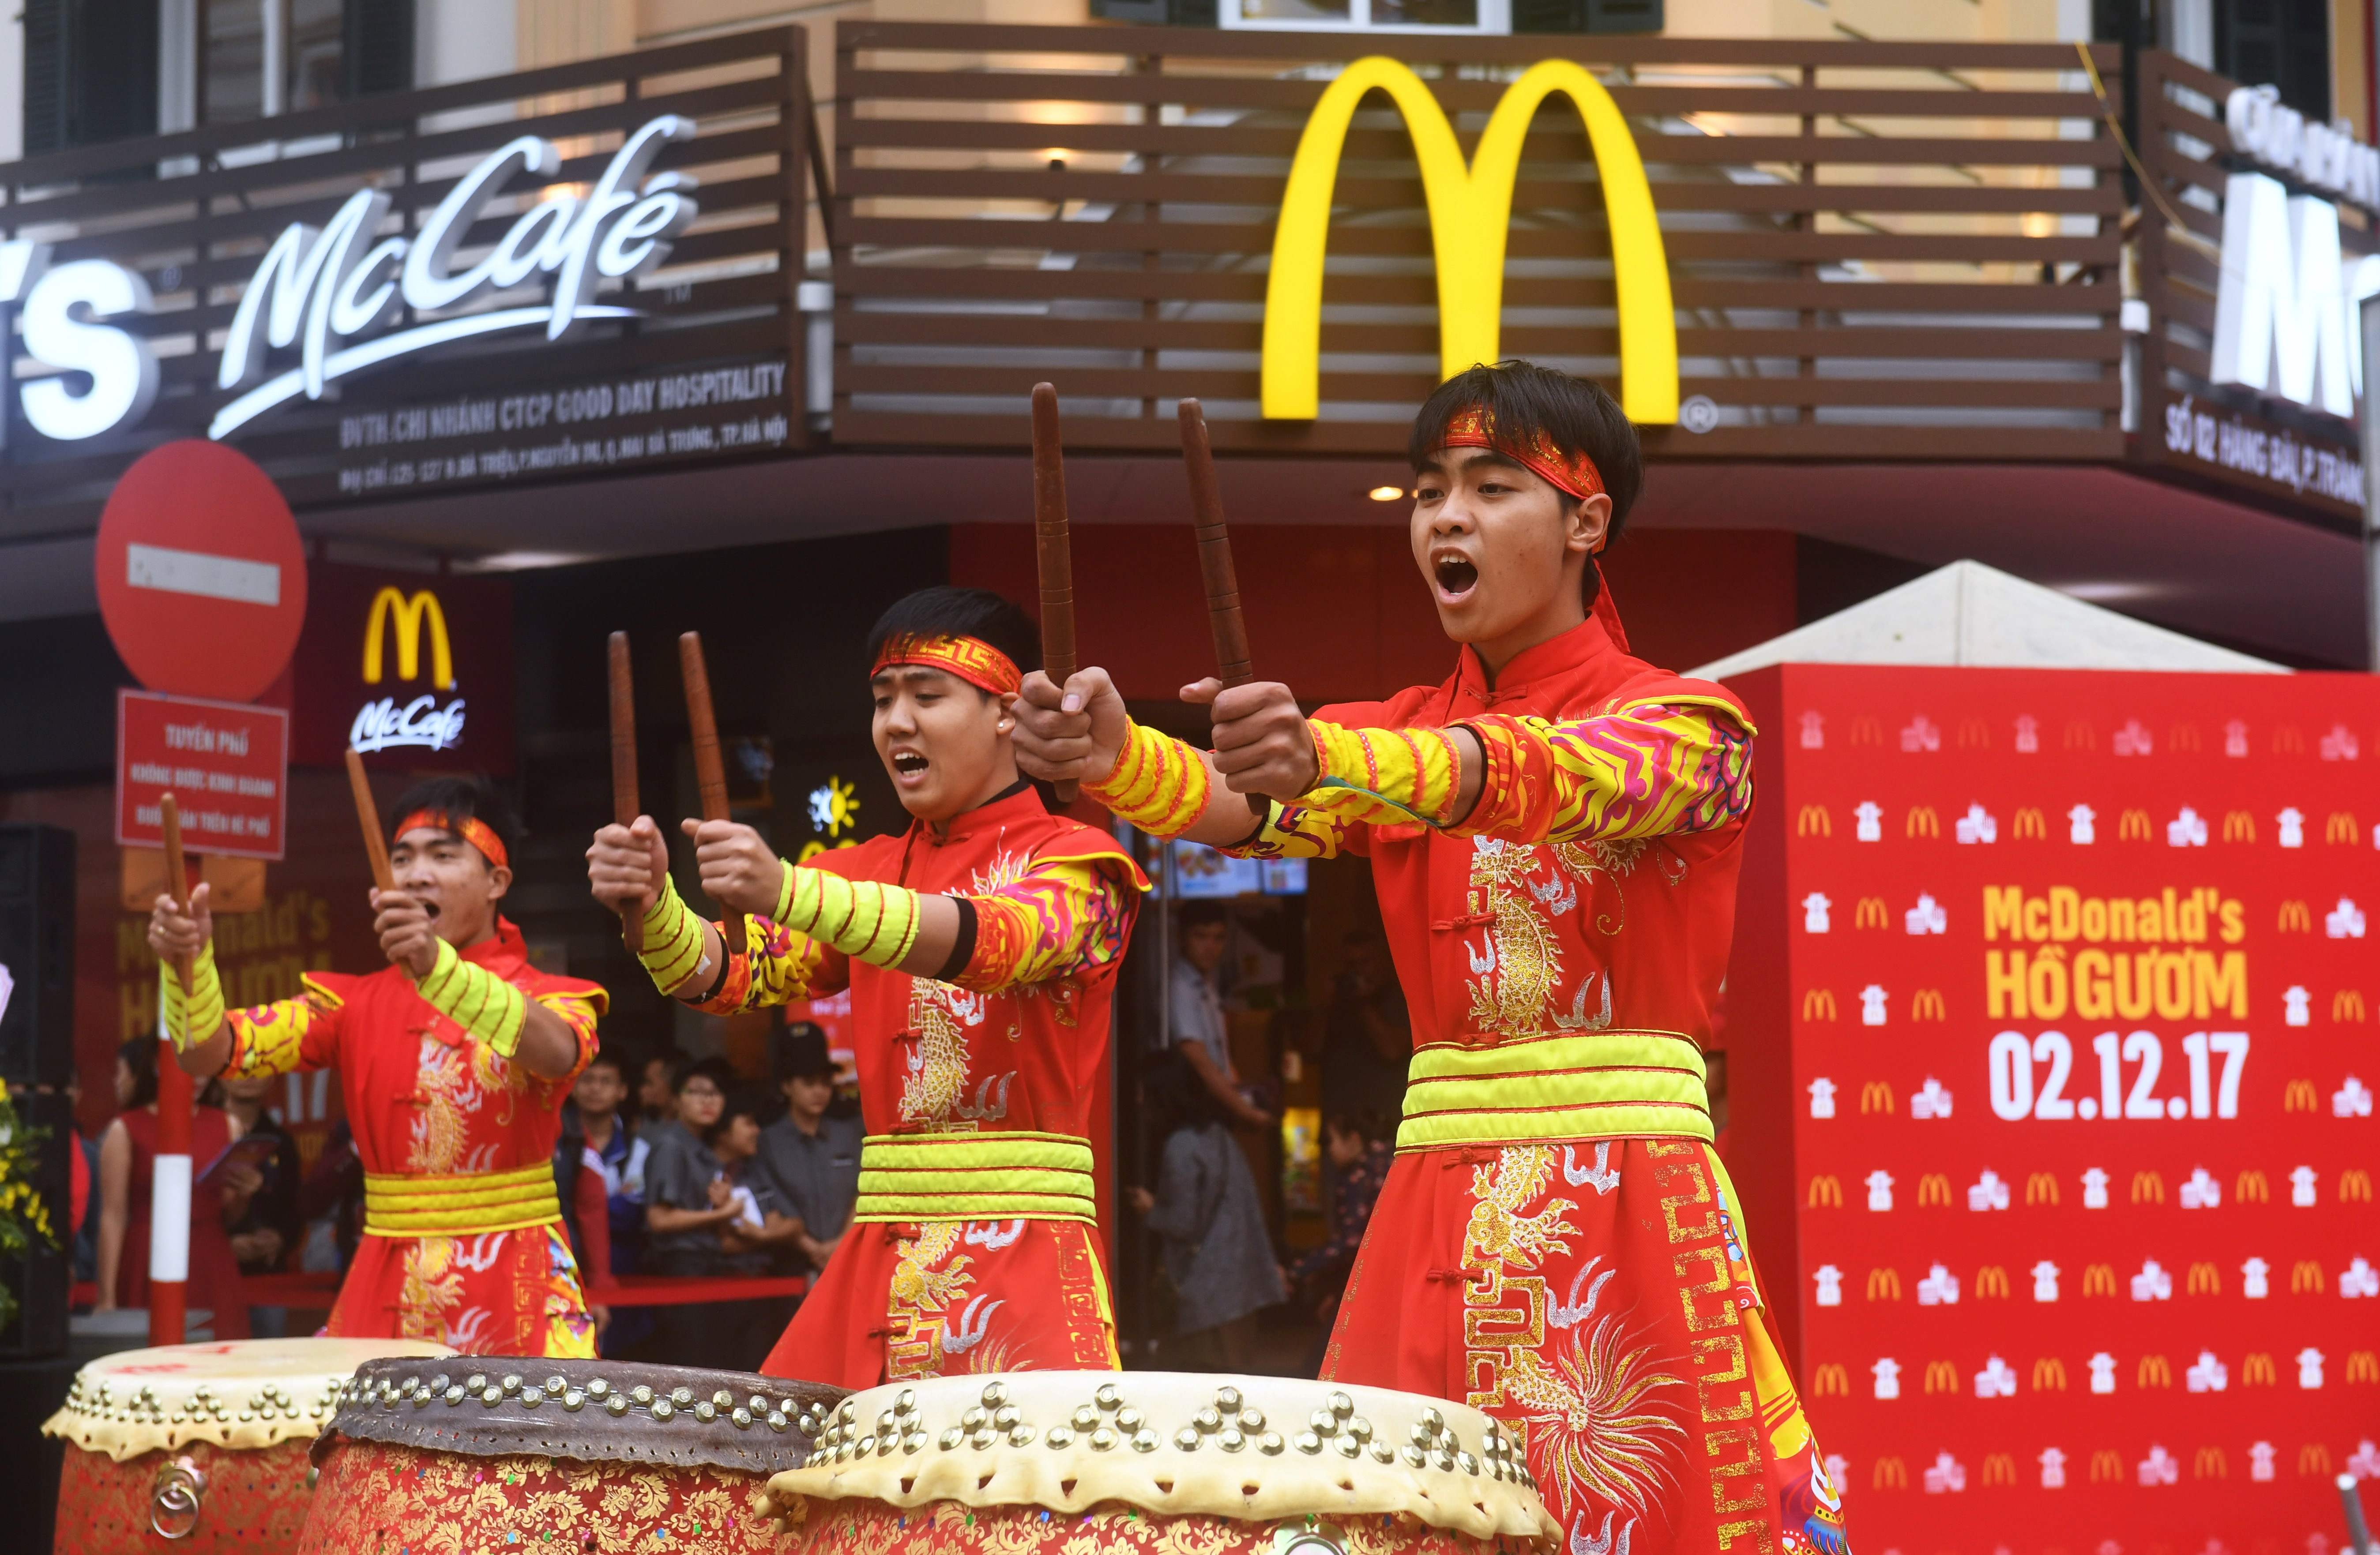 صور افتتاح اول مطعم لماكدوناز فى فيتنام (2)